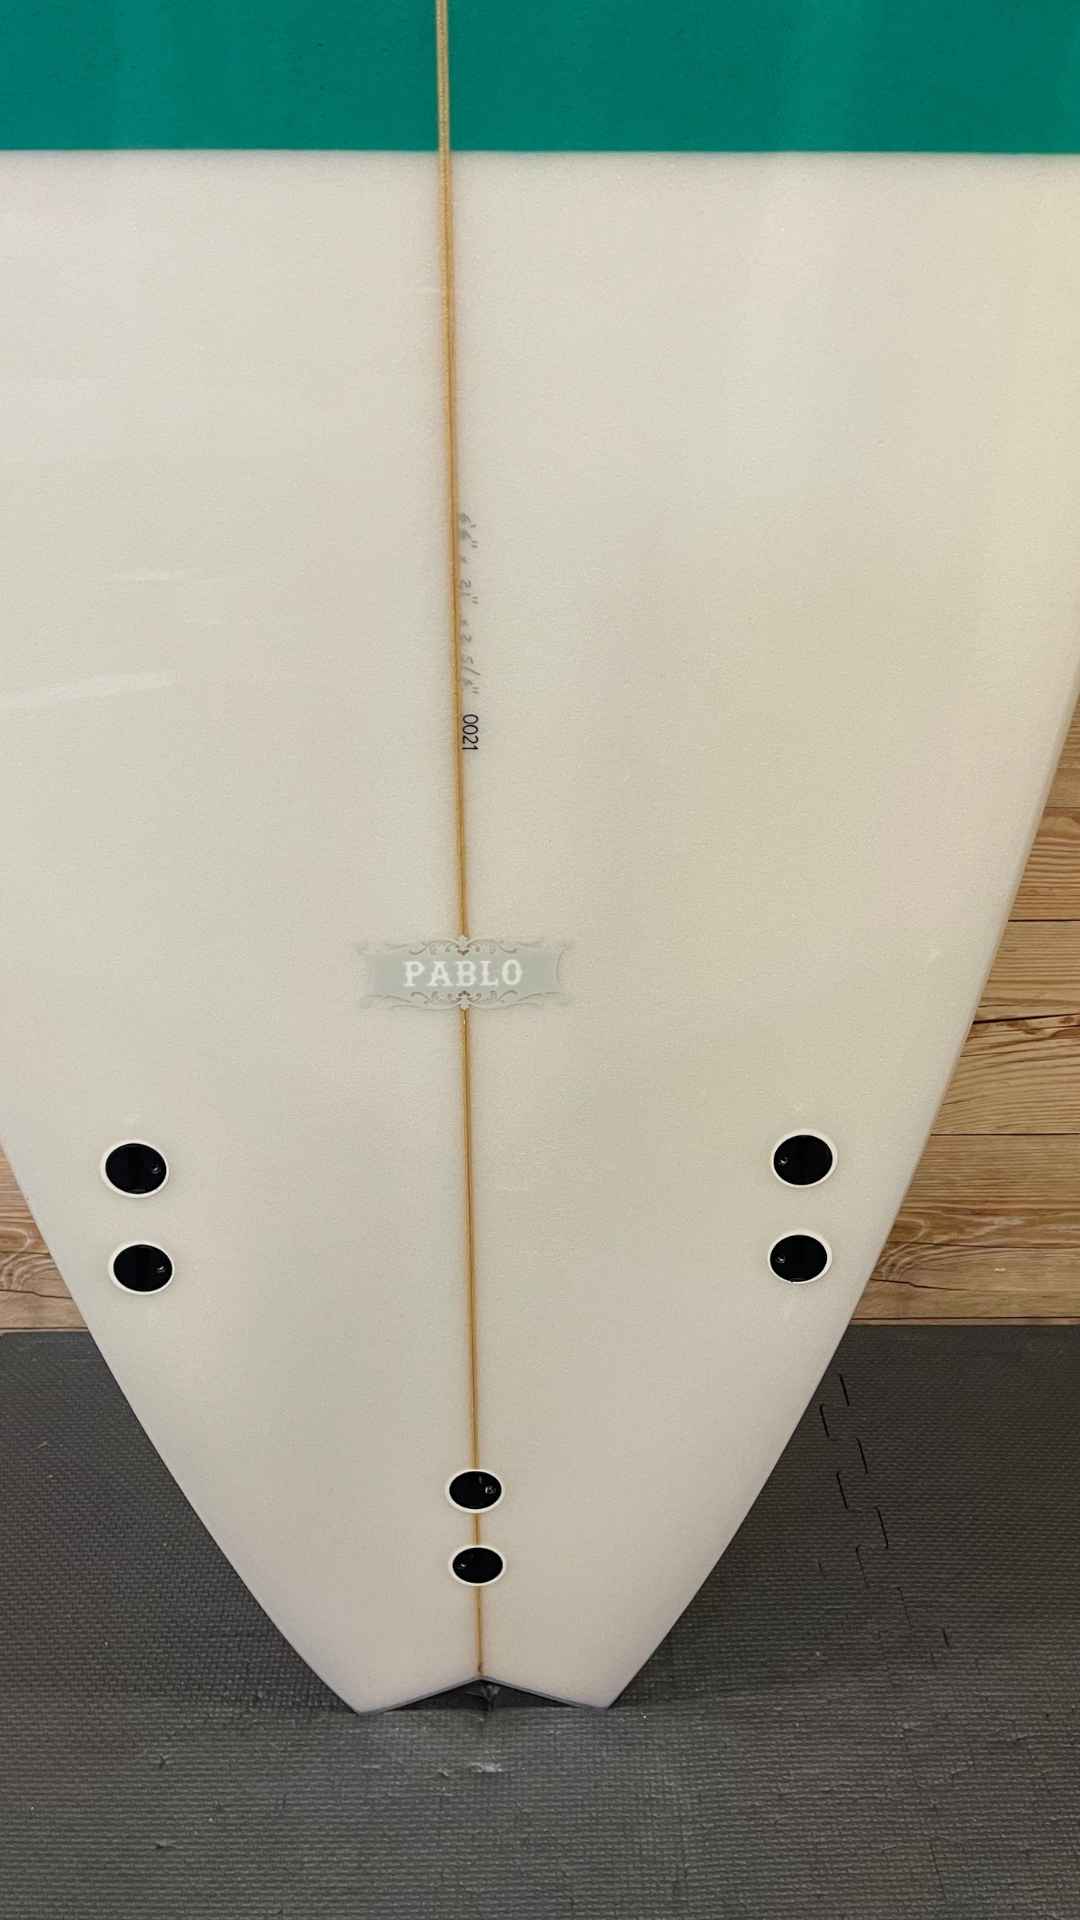 Pablo 6'6"